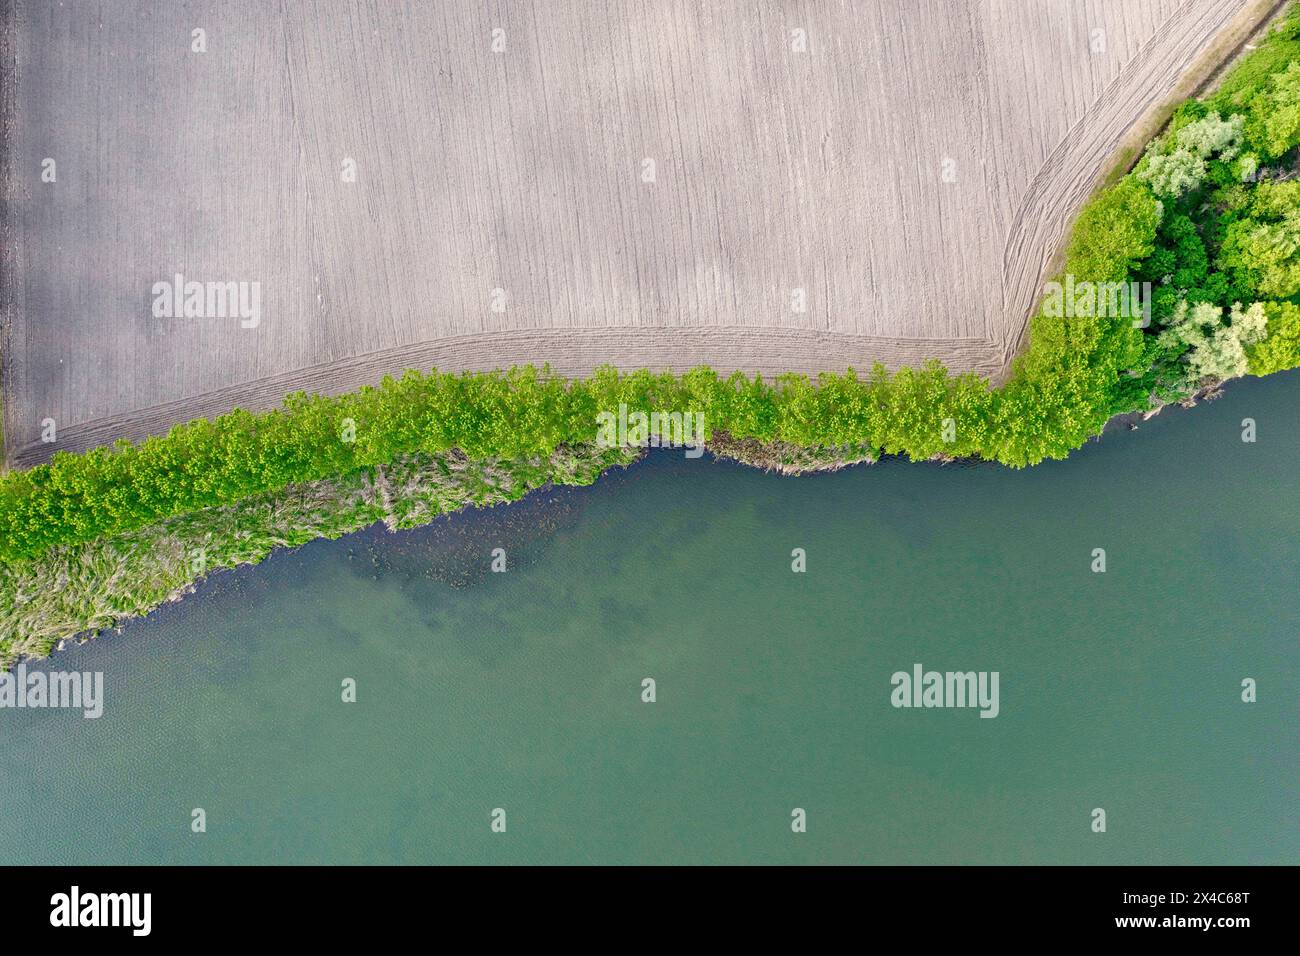 Italia, Mantova. Vista aerea dei campi seminati di recente sulle rive del lago. Foto Stock